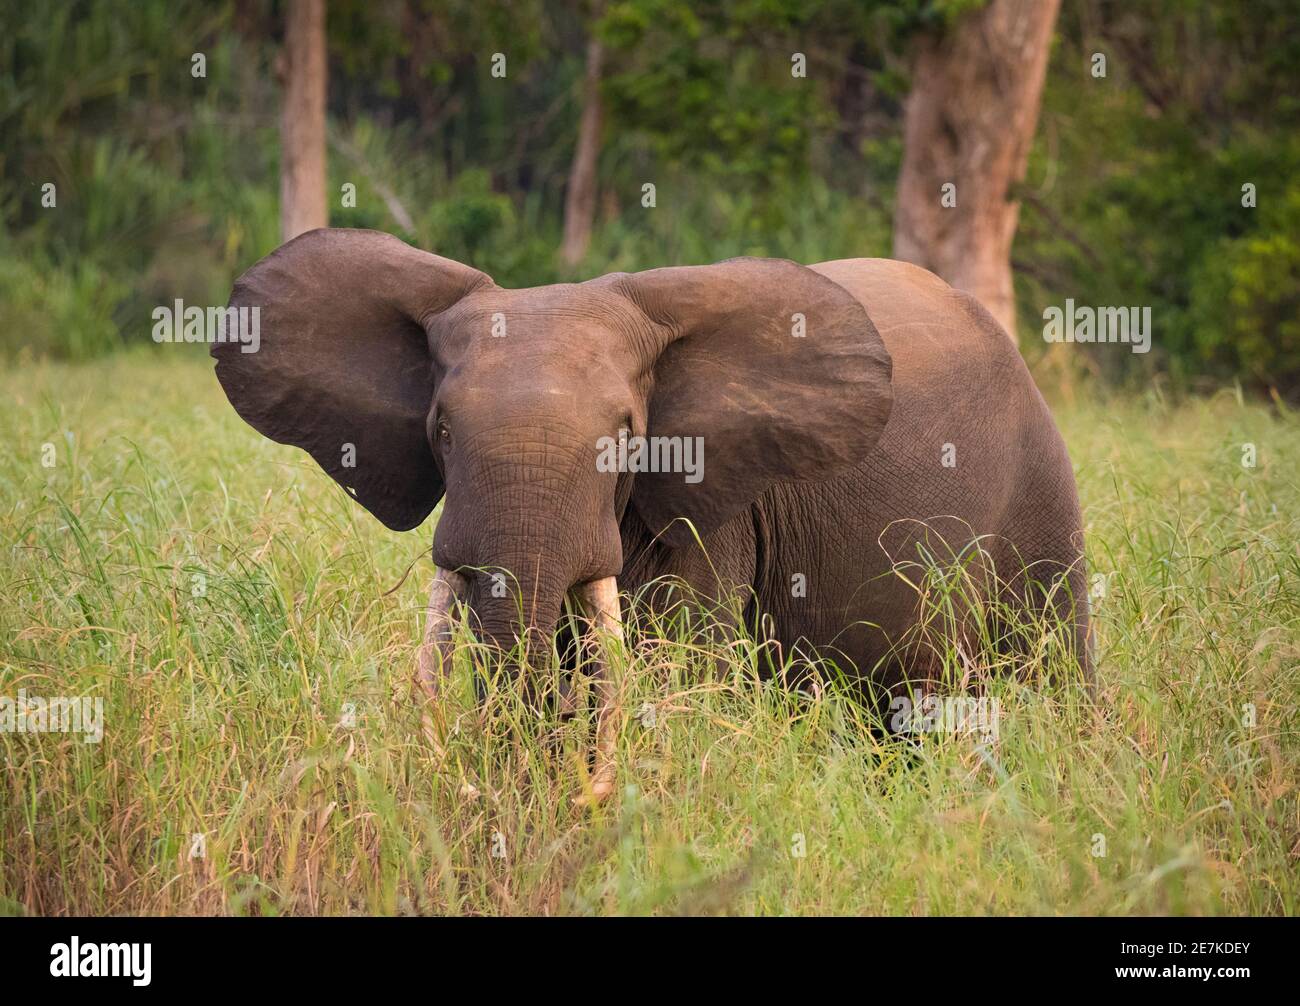 Éléphant de forêt africain (Loxodonta cyclotis) mâle en herbe longue, Akaka, Parc national de Loango, Gabon. Banque D'Images